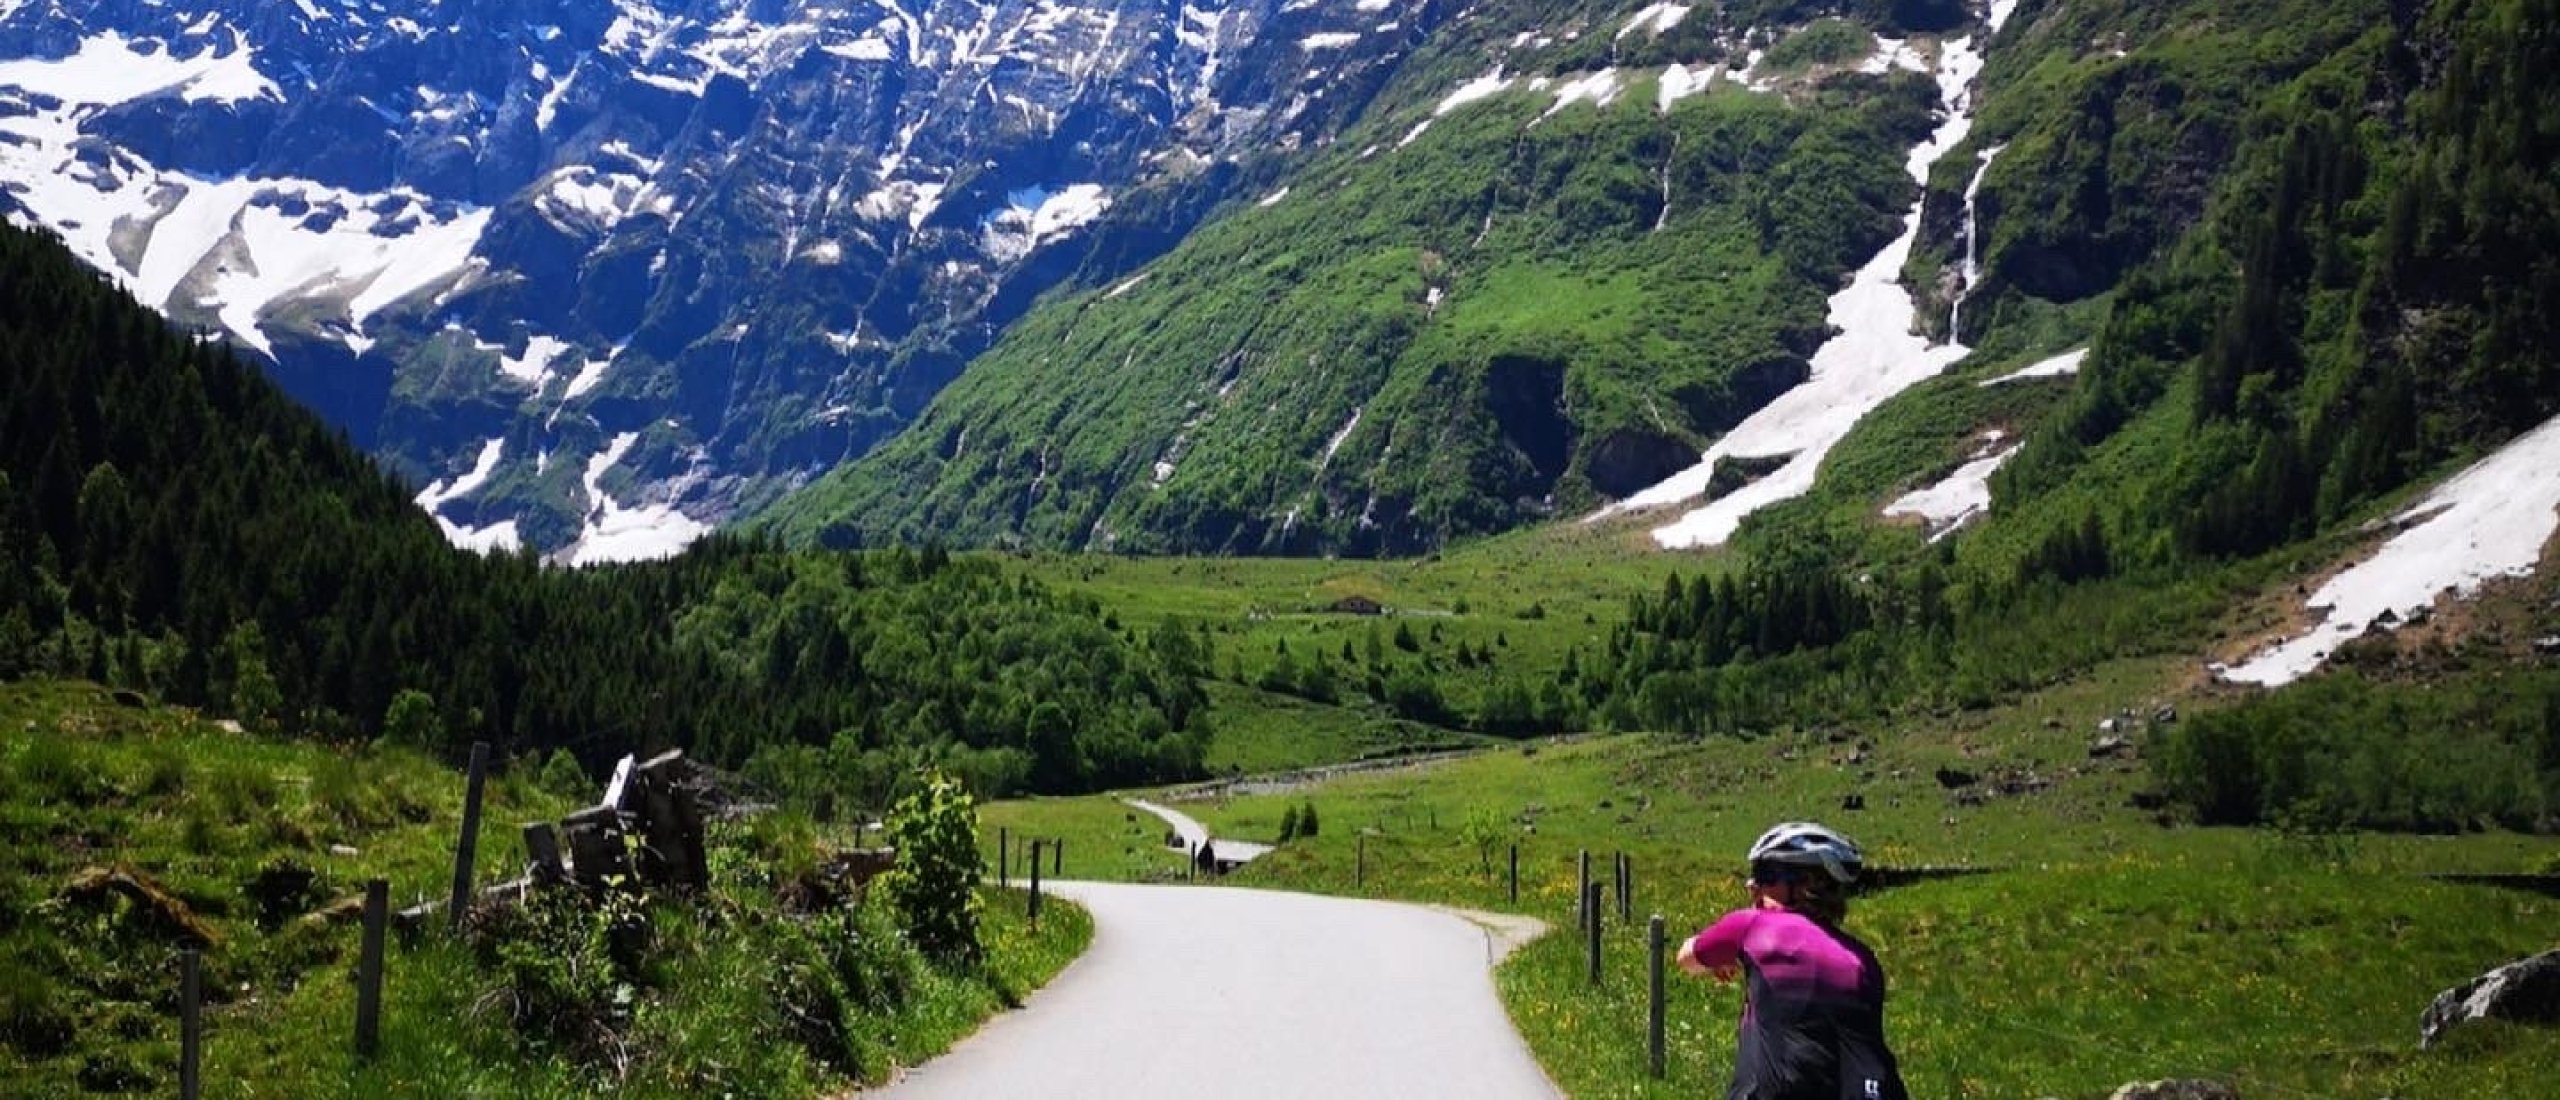 Kom je met ons mee op fietsvakantie naar Oostenrijk?